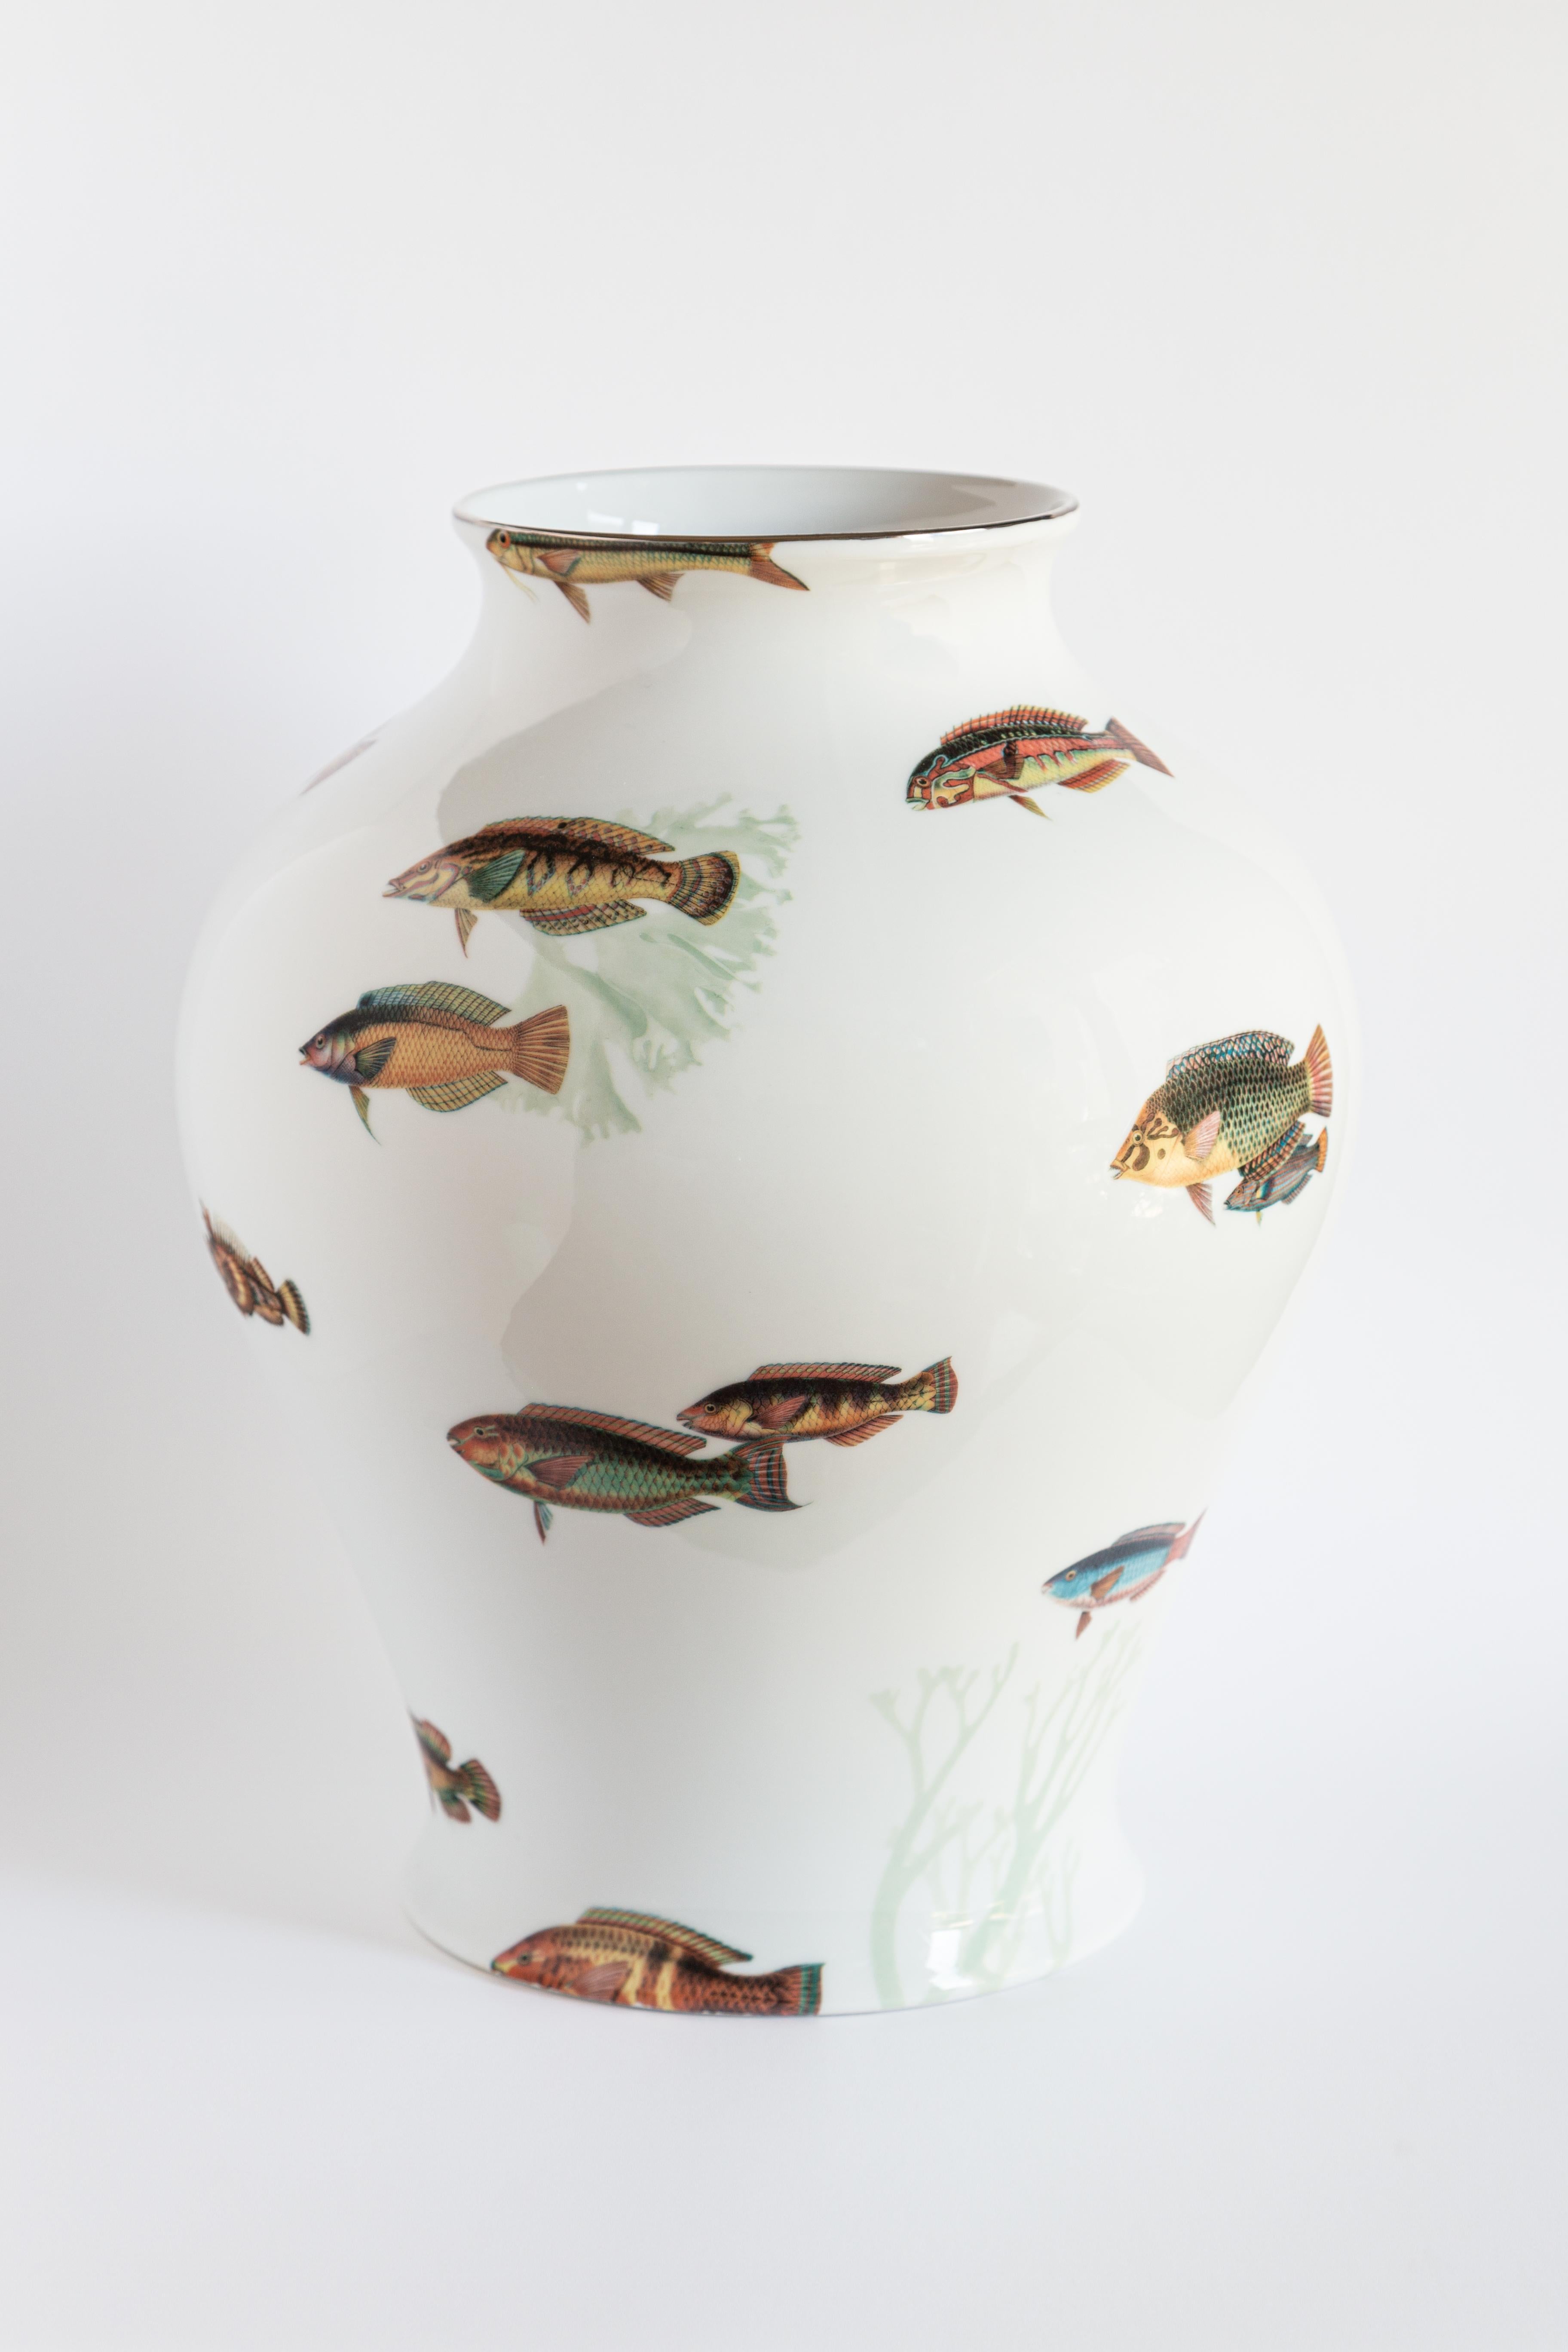 Le design classique de ce vase en porcelaine revient à la vie avec des décorations rétro à saveur contemporaine. Le récif corallien des îles Amami, près du Japon, inspire ce design où des poissons tropicaux jouent autour de la surface du vase.